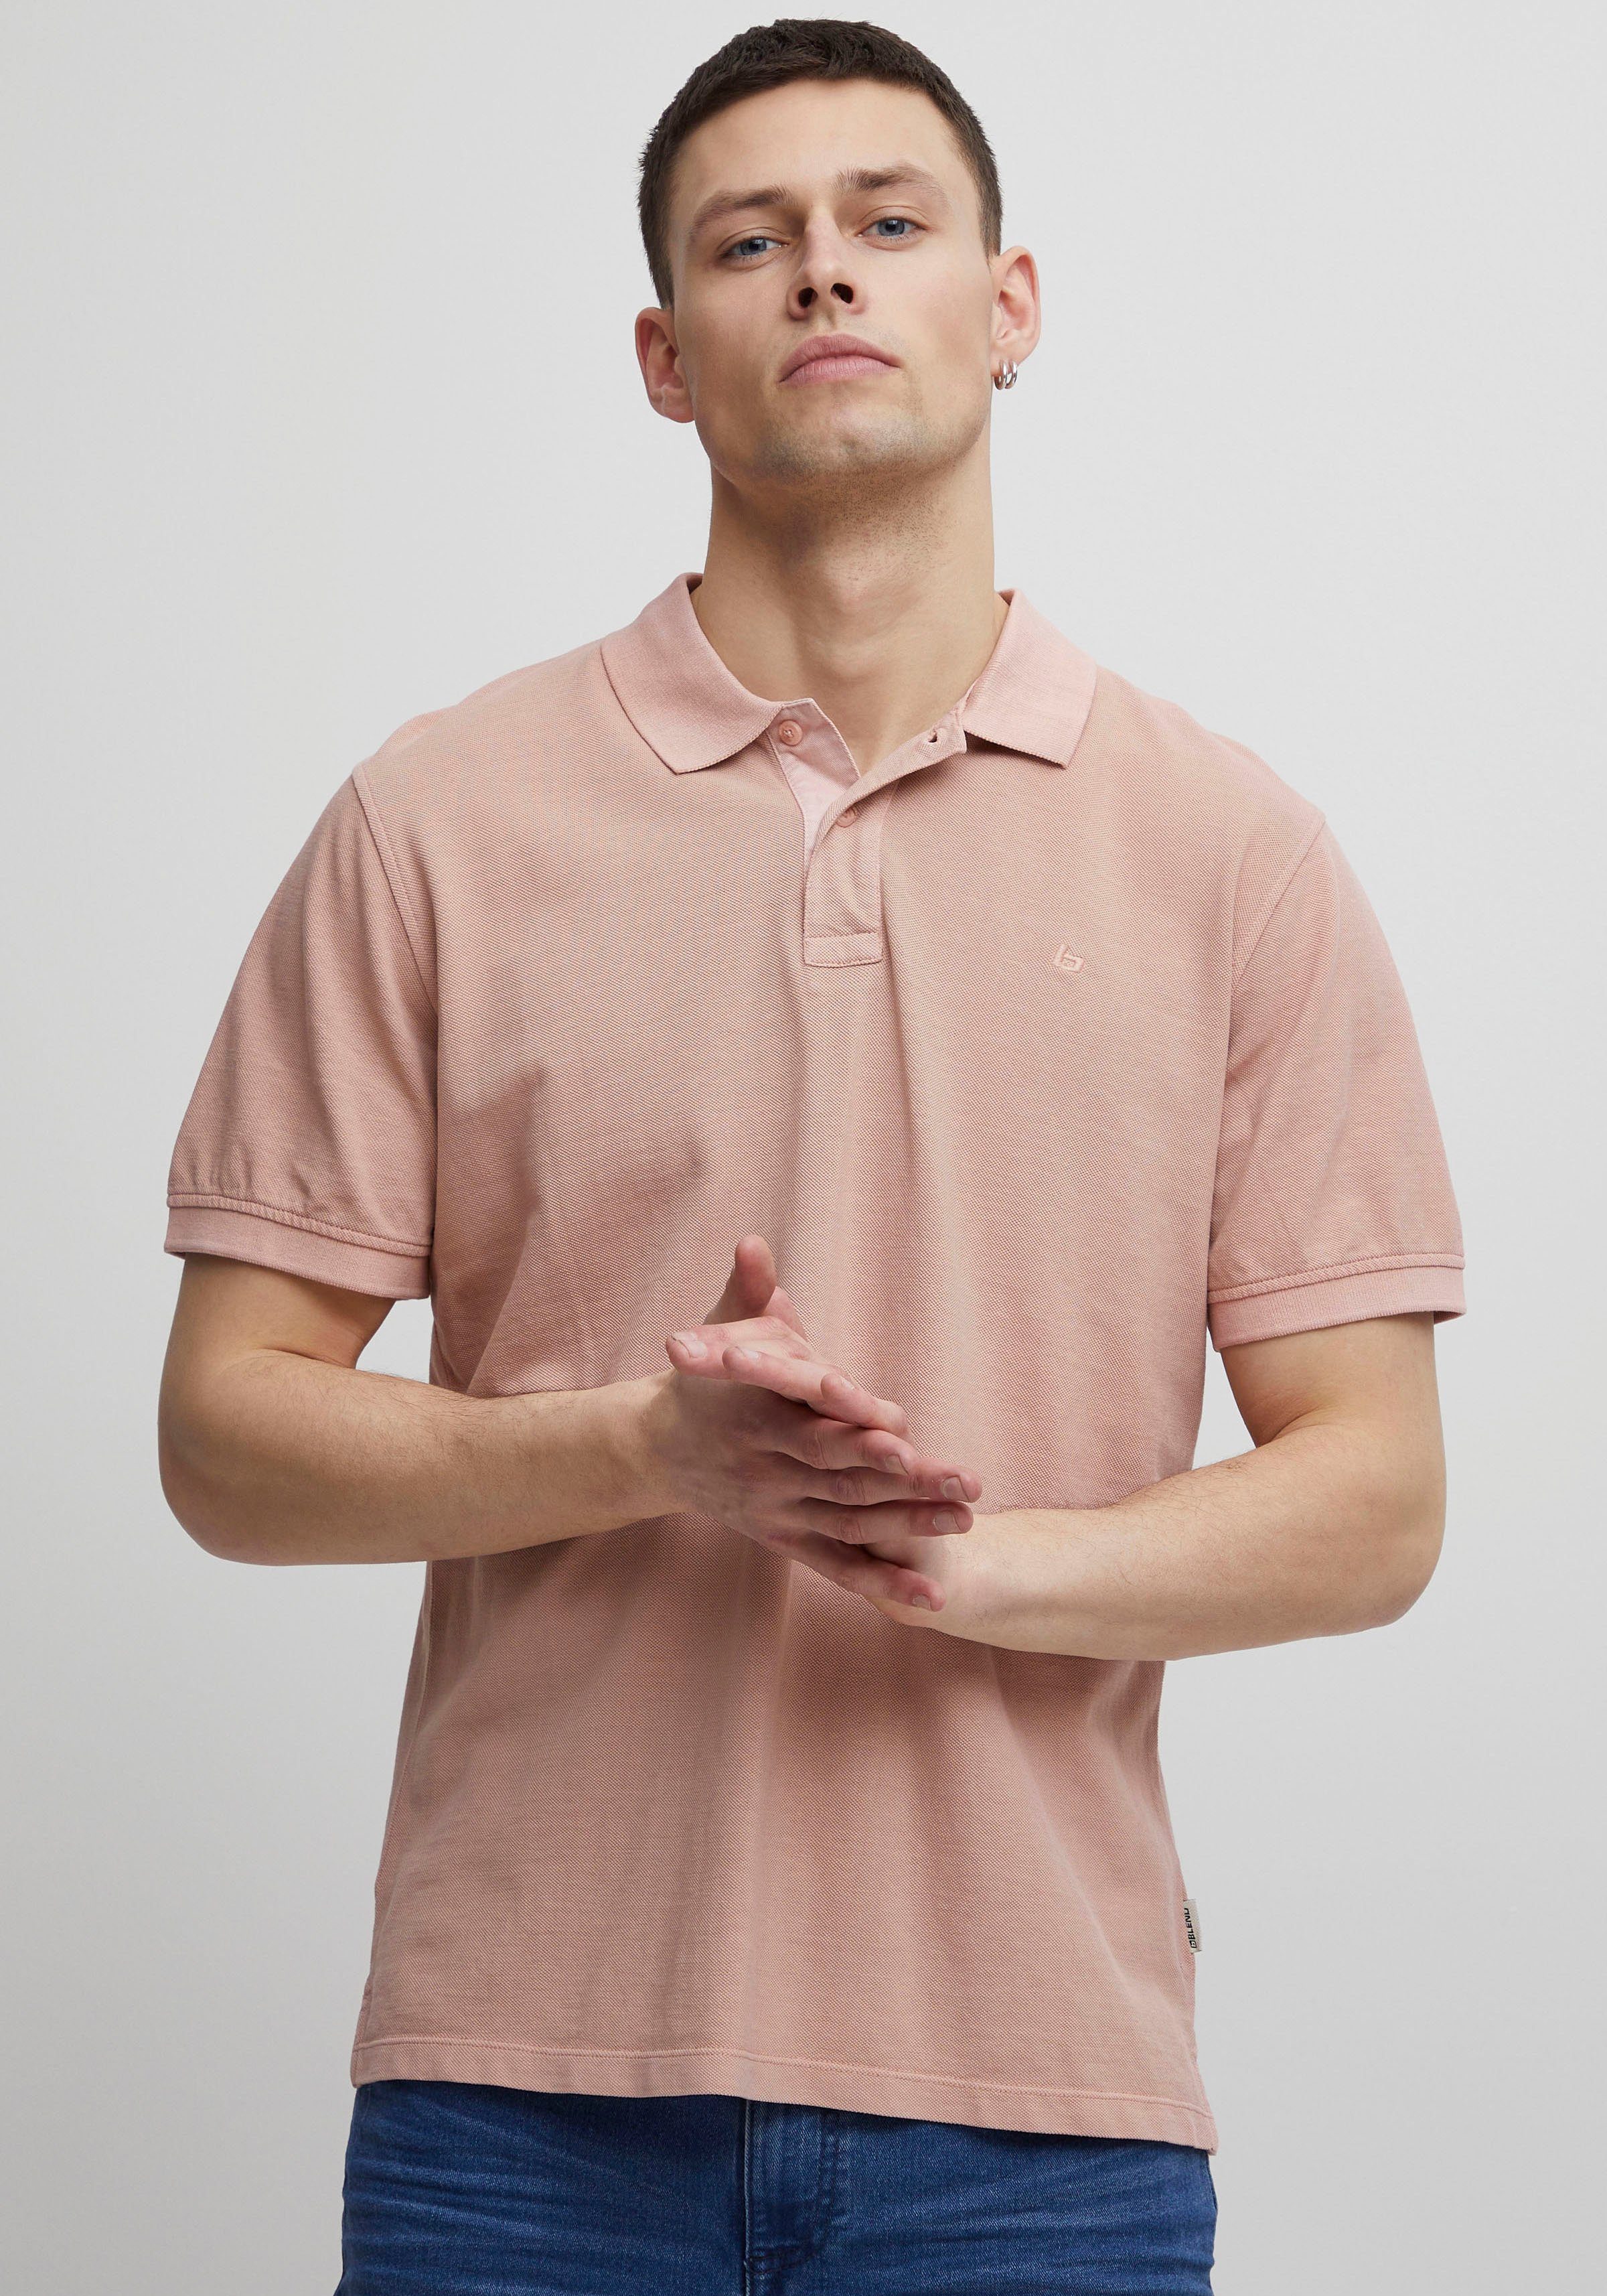 BL-Poloshirt Blend Poloshirt pink